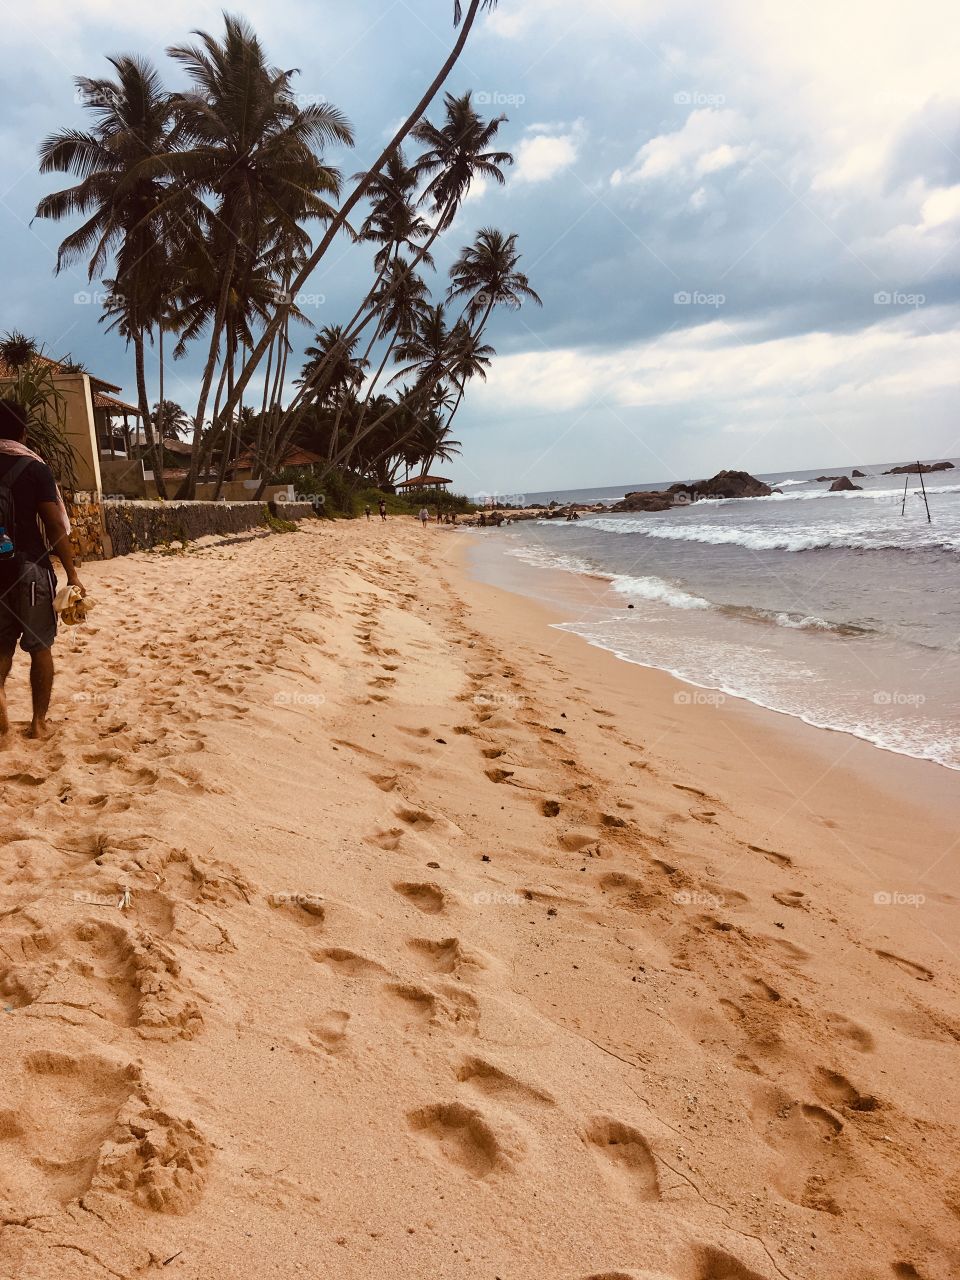 Unawatuna beach Sri Lanka 